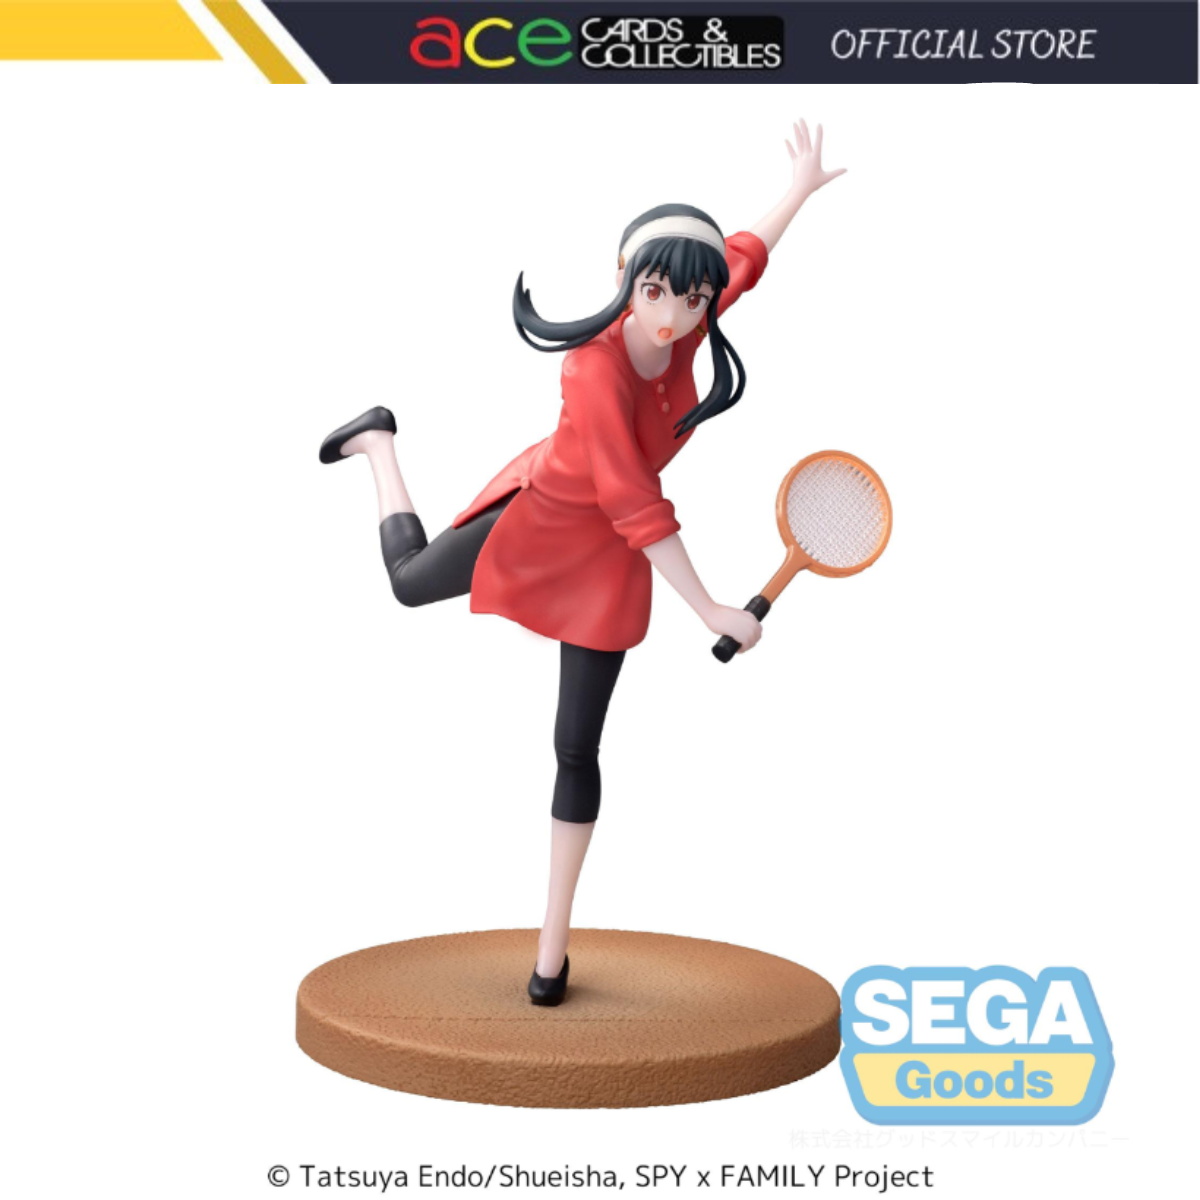 Luminasta TV Anime SPY x FAMILY "Yor Forger" Tennis-Sega-Ace Cards & Collectibles